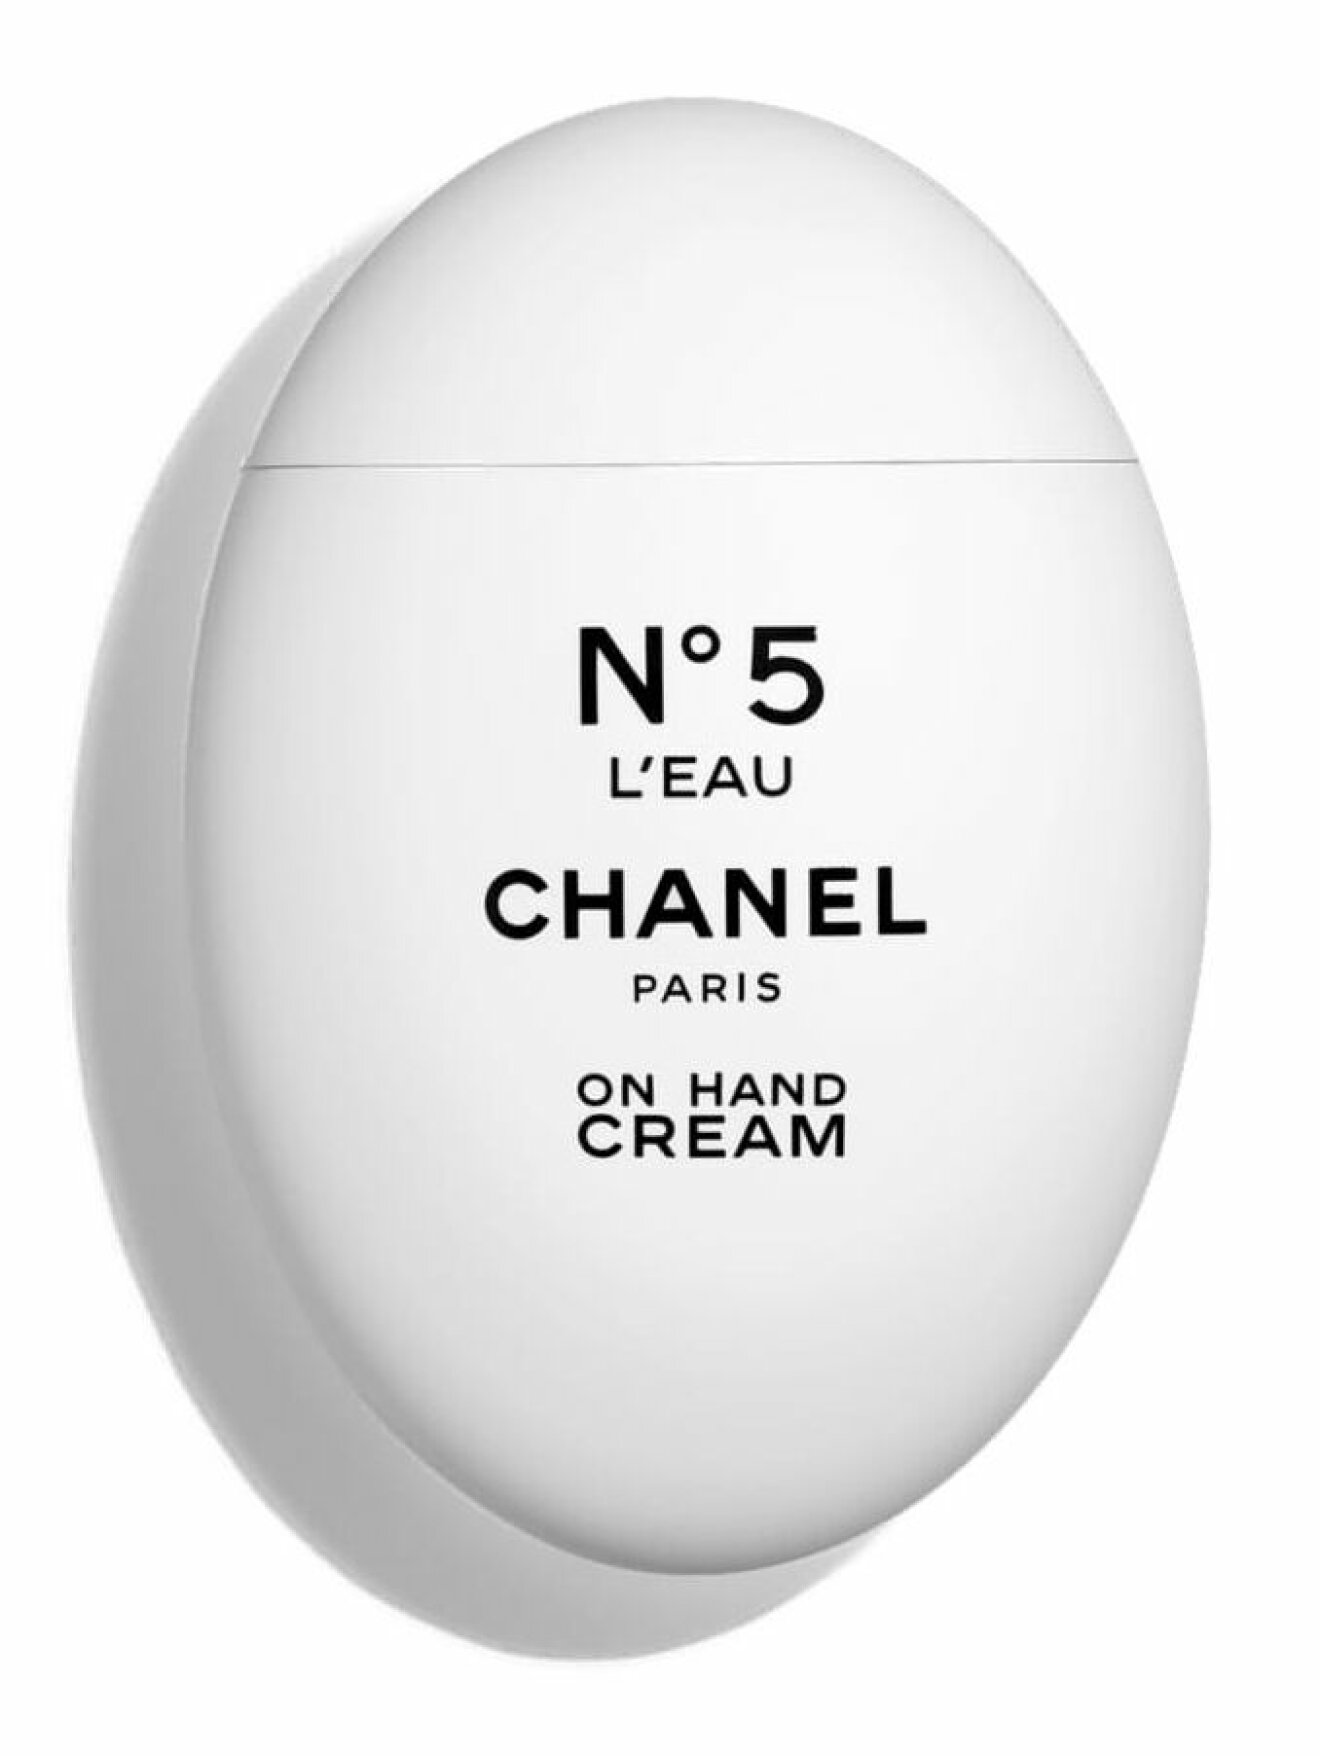 Bra handkräm med god doft från Chanel.